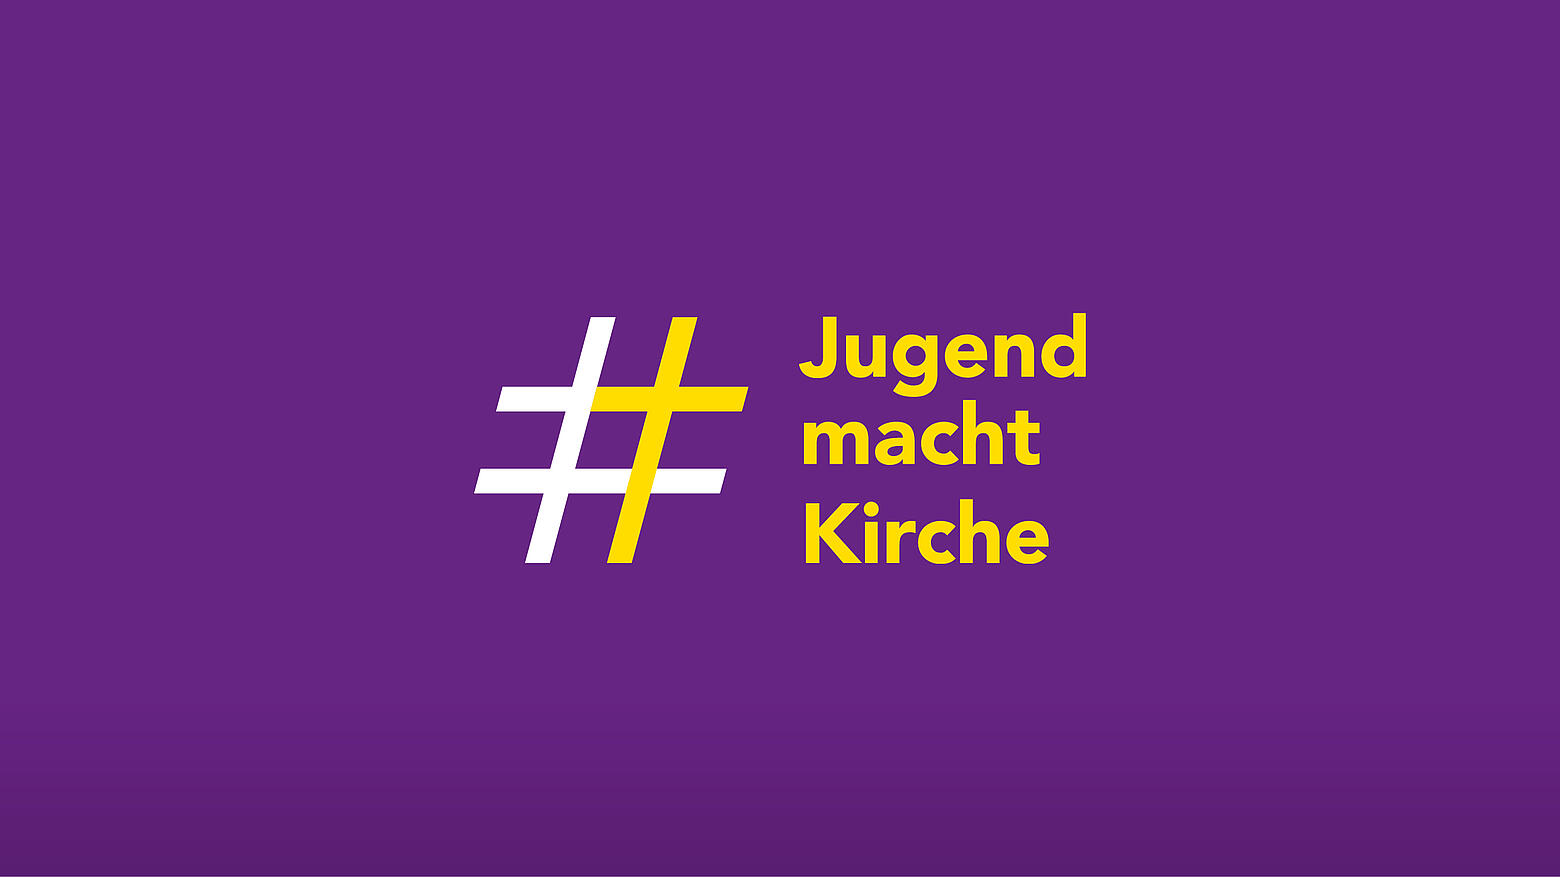 Das Jugend-macht-Kirche-Kampagnen-Logo auf violettem Hintergrund.